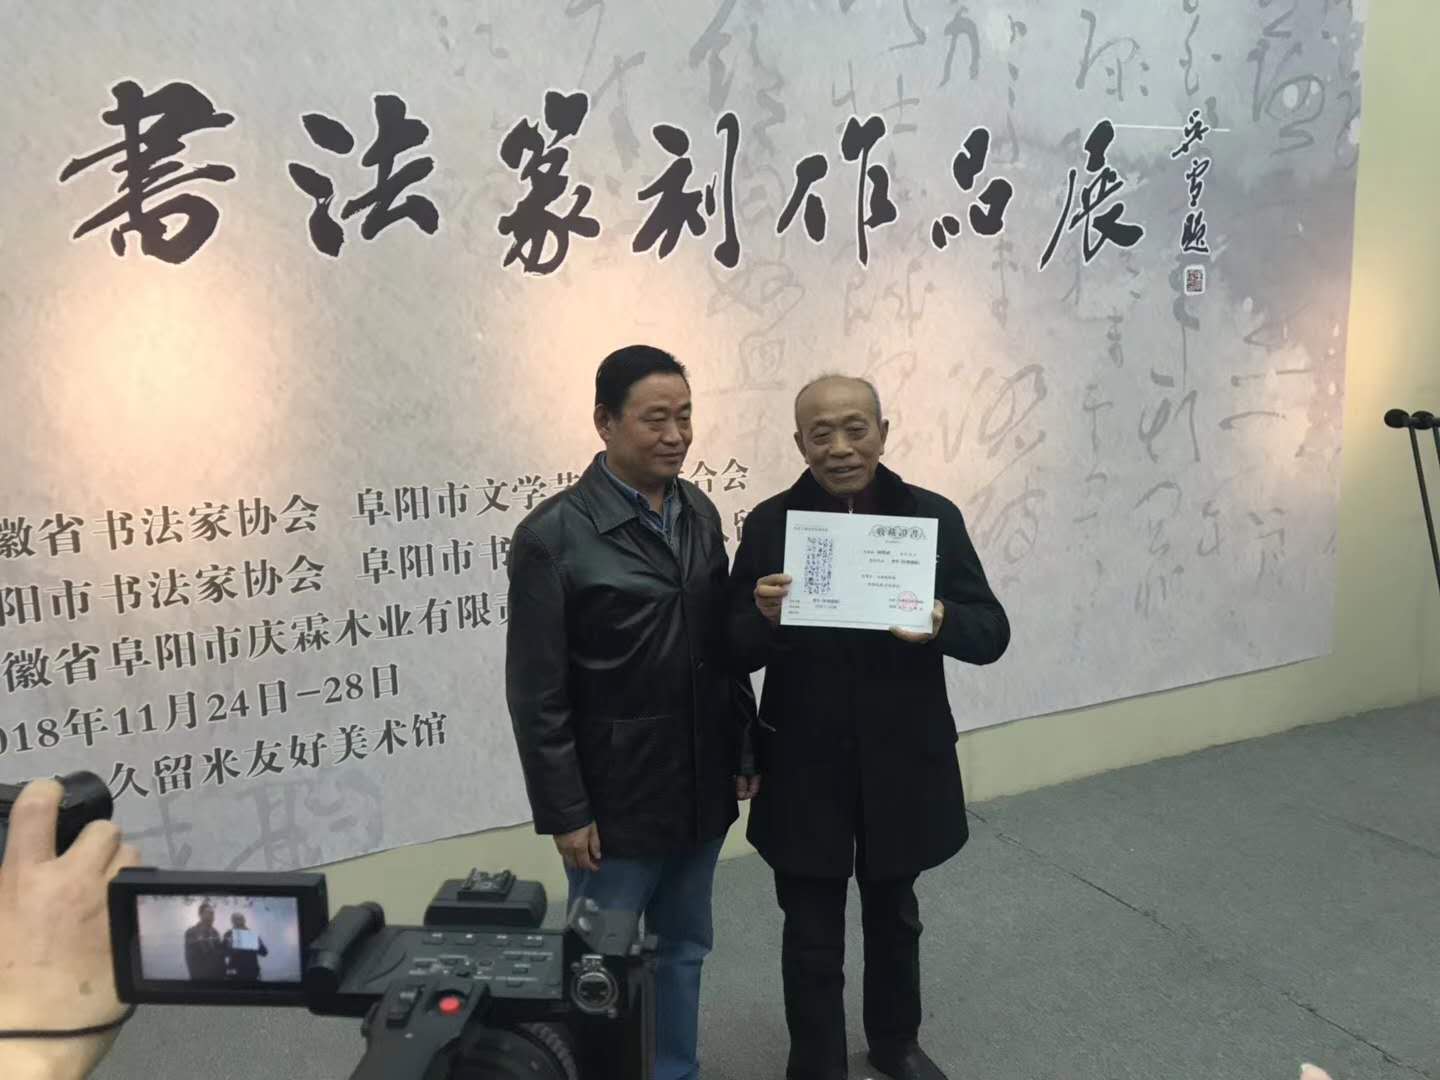 杨霁成先生向媒体展示久留米美术馆作品永久收藏证书